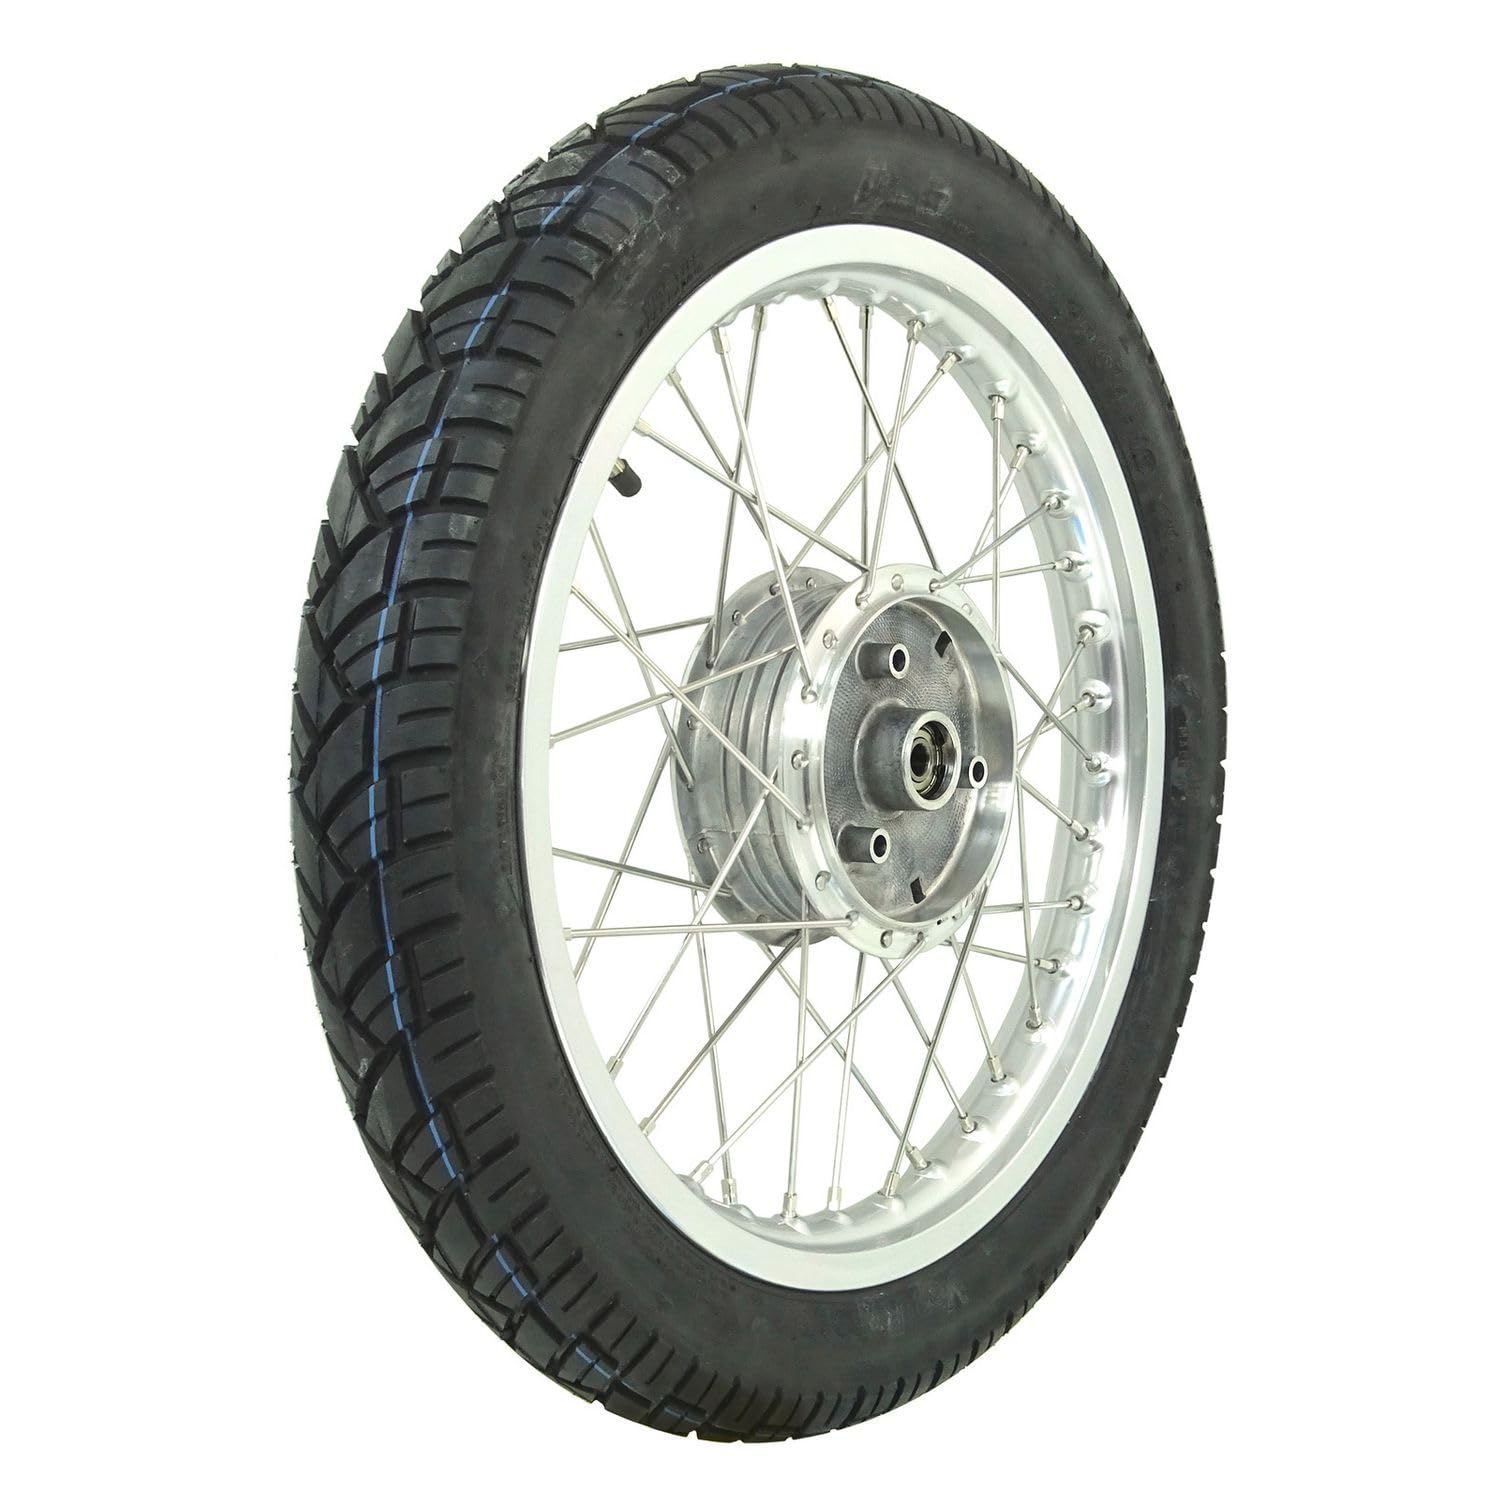 Komplettrad - Vorne - 1,5x16 Zoll - Alufelge poliert, Edelstahlspeichen, mit Vee Rubber-Reifen VRM094 montiert von MZA